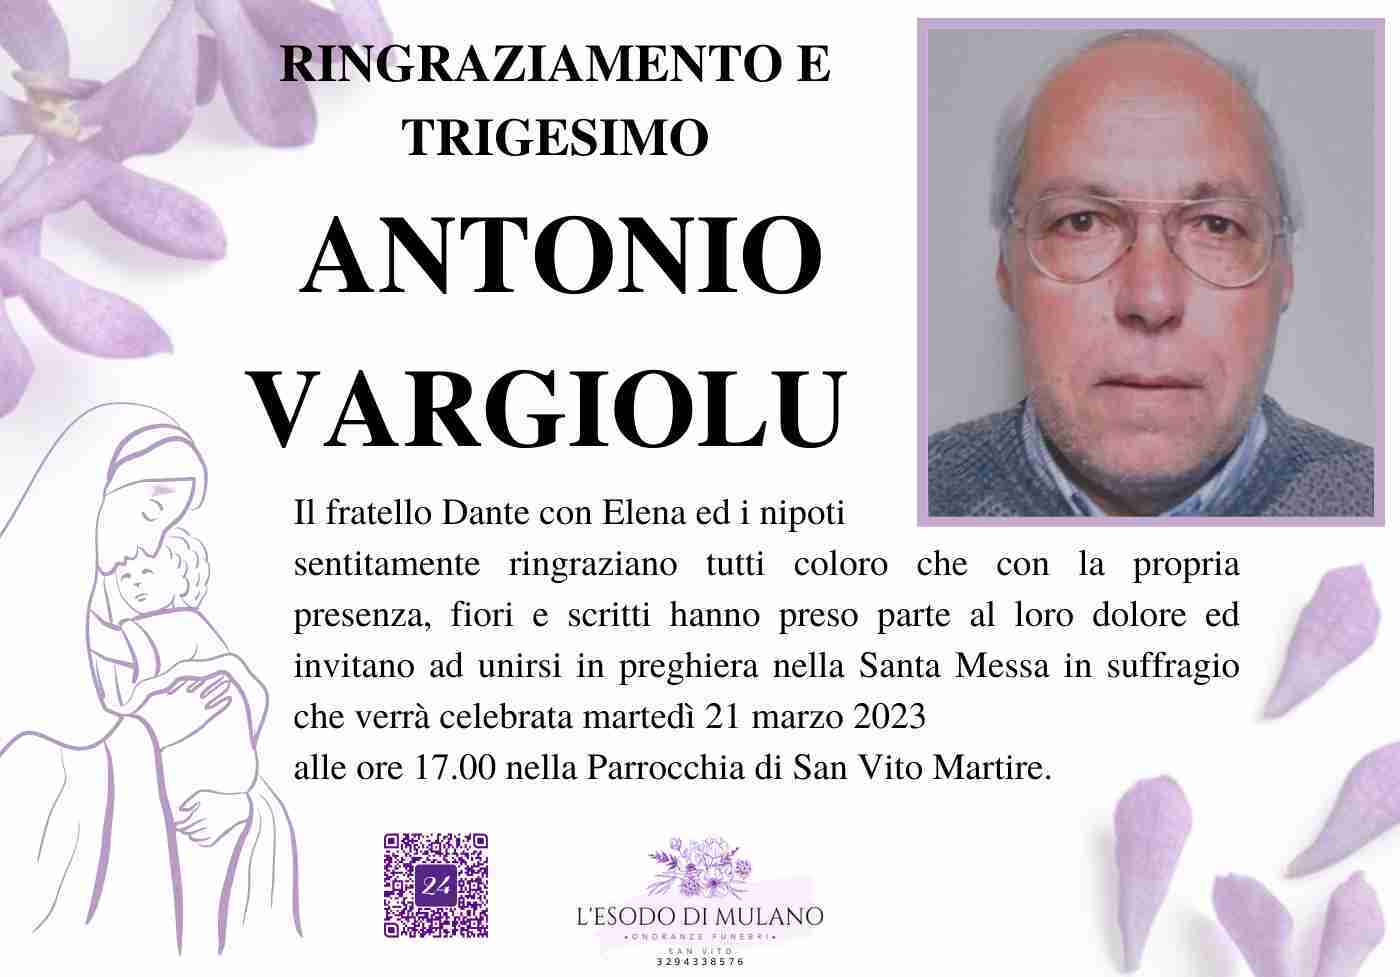 Antonio Vargiolu